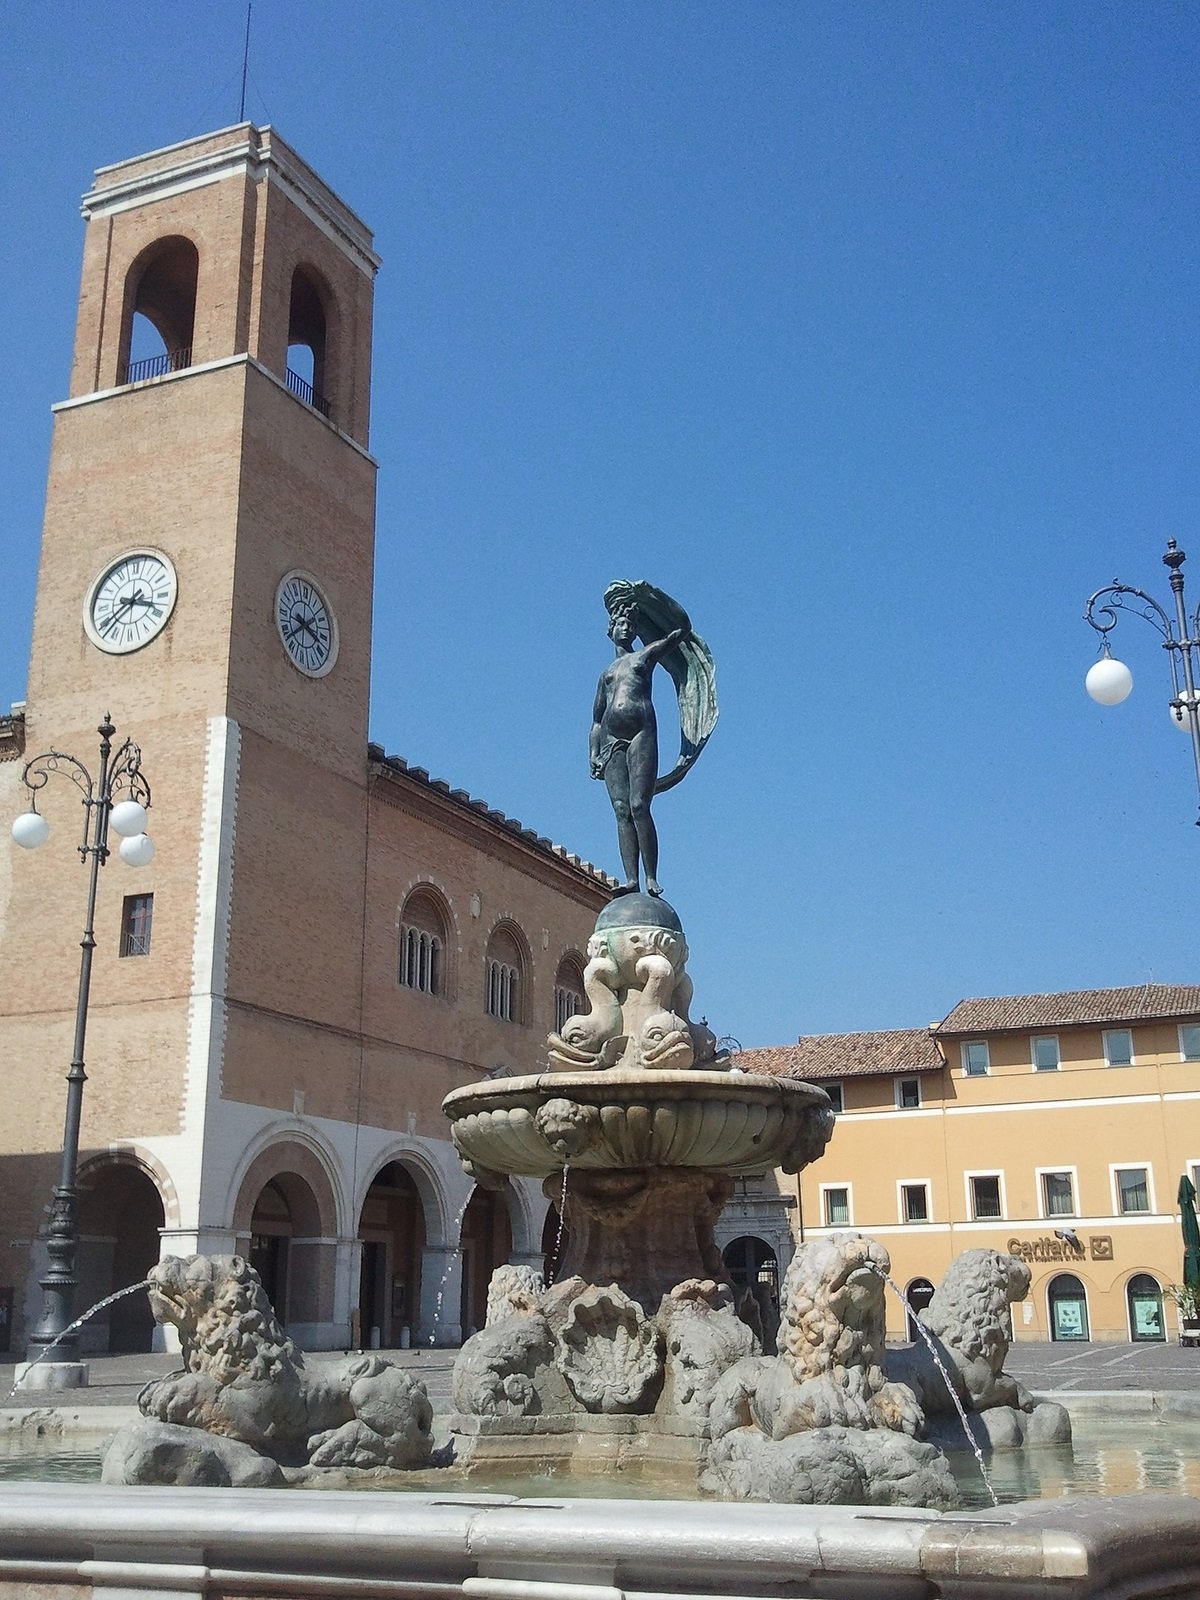 Palazzo della Ragione e Fontana della Fortuna a Fano. Photo Parsifall CC BY-SA 3.0 via Wikimedia